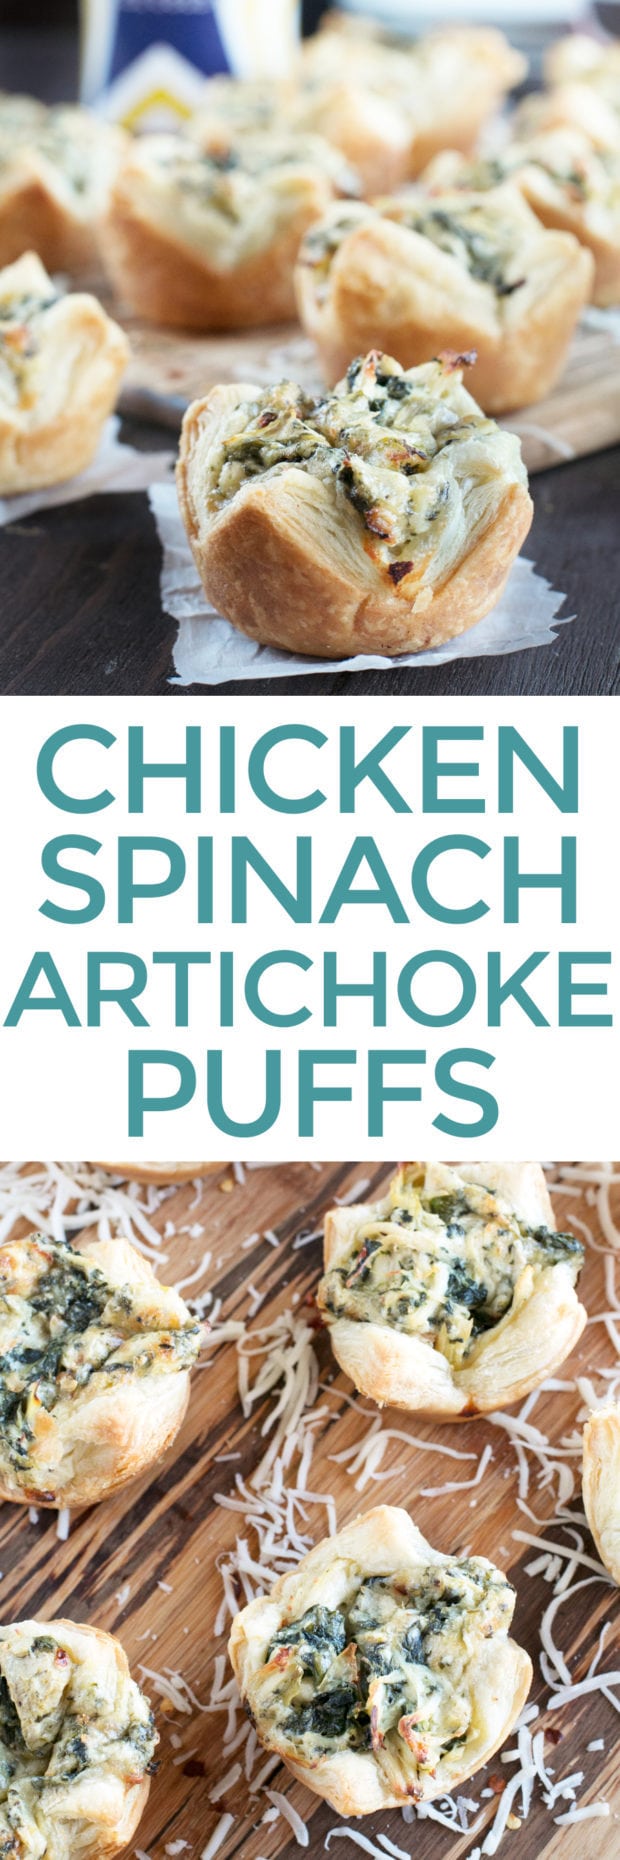 Chicken Spinach Artichoke Dip Puffs